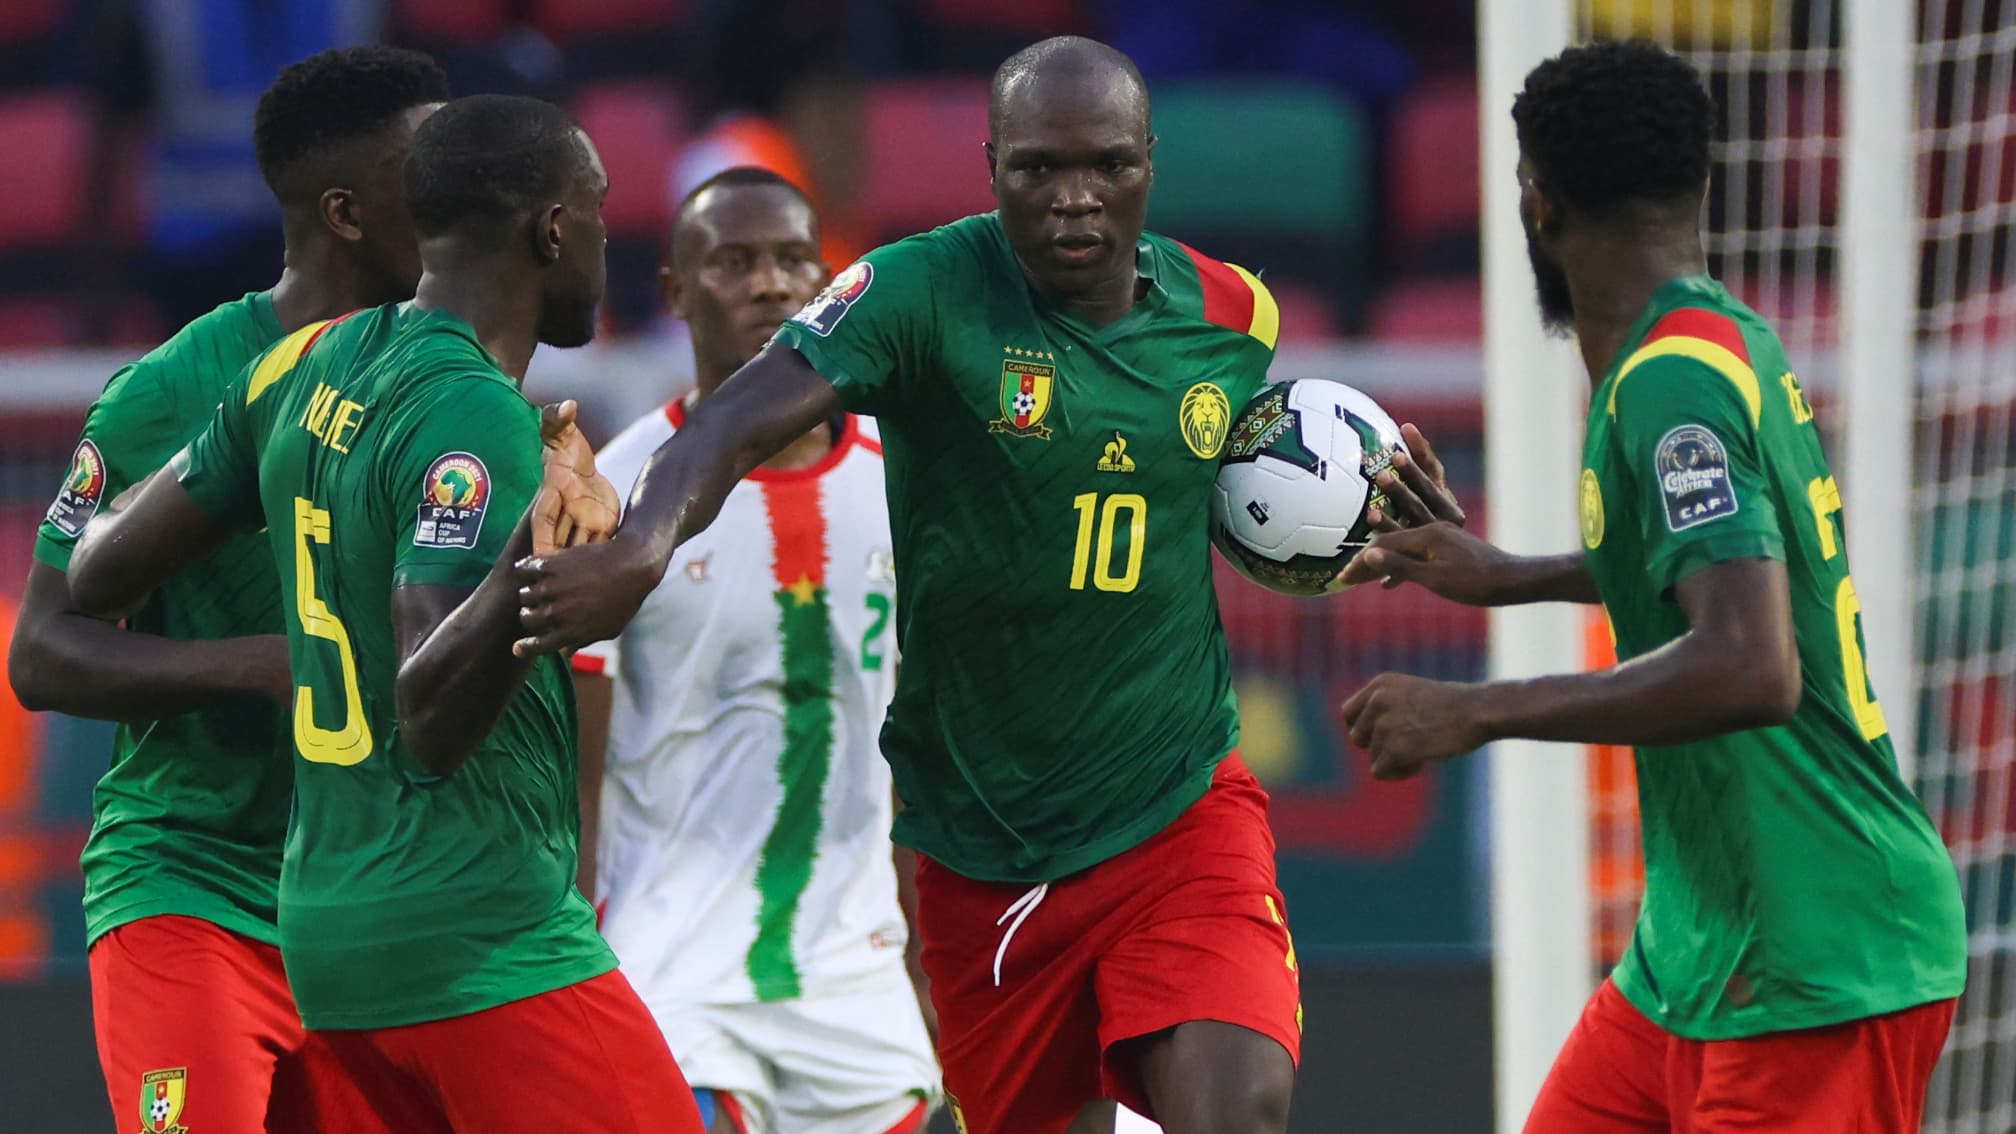 Sauvé du piège burkinabé grâce à 2 buts de Vincent Aboubakar, le Cameroun visent la qualification contre l'Ethiopie.